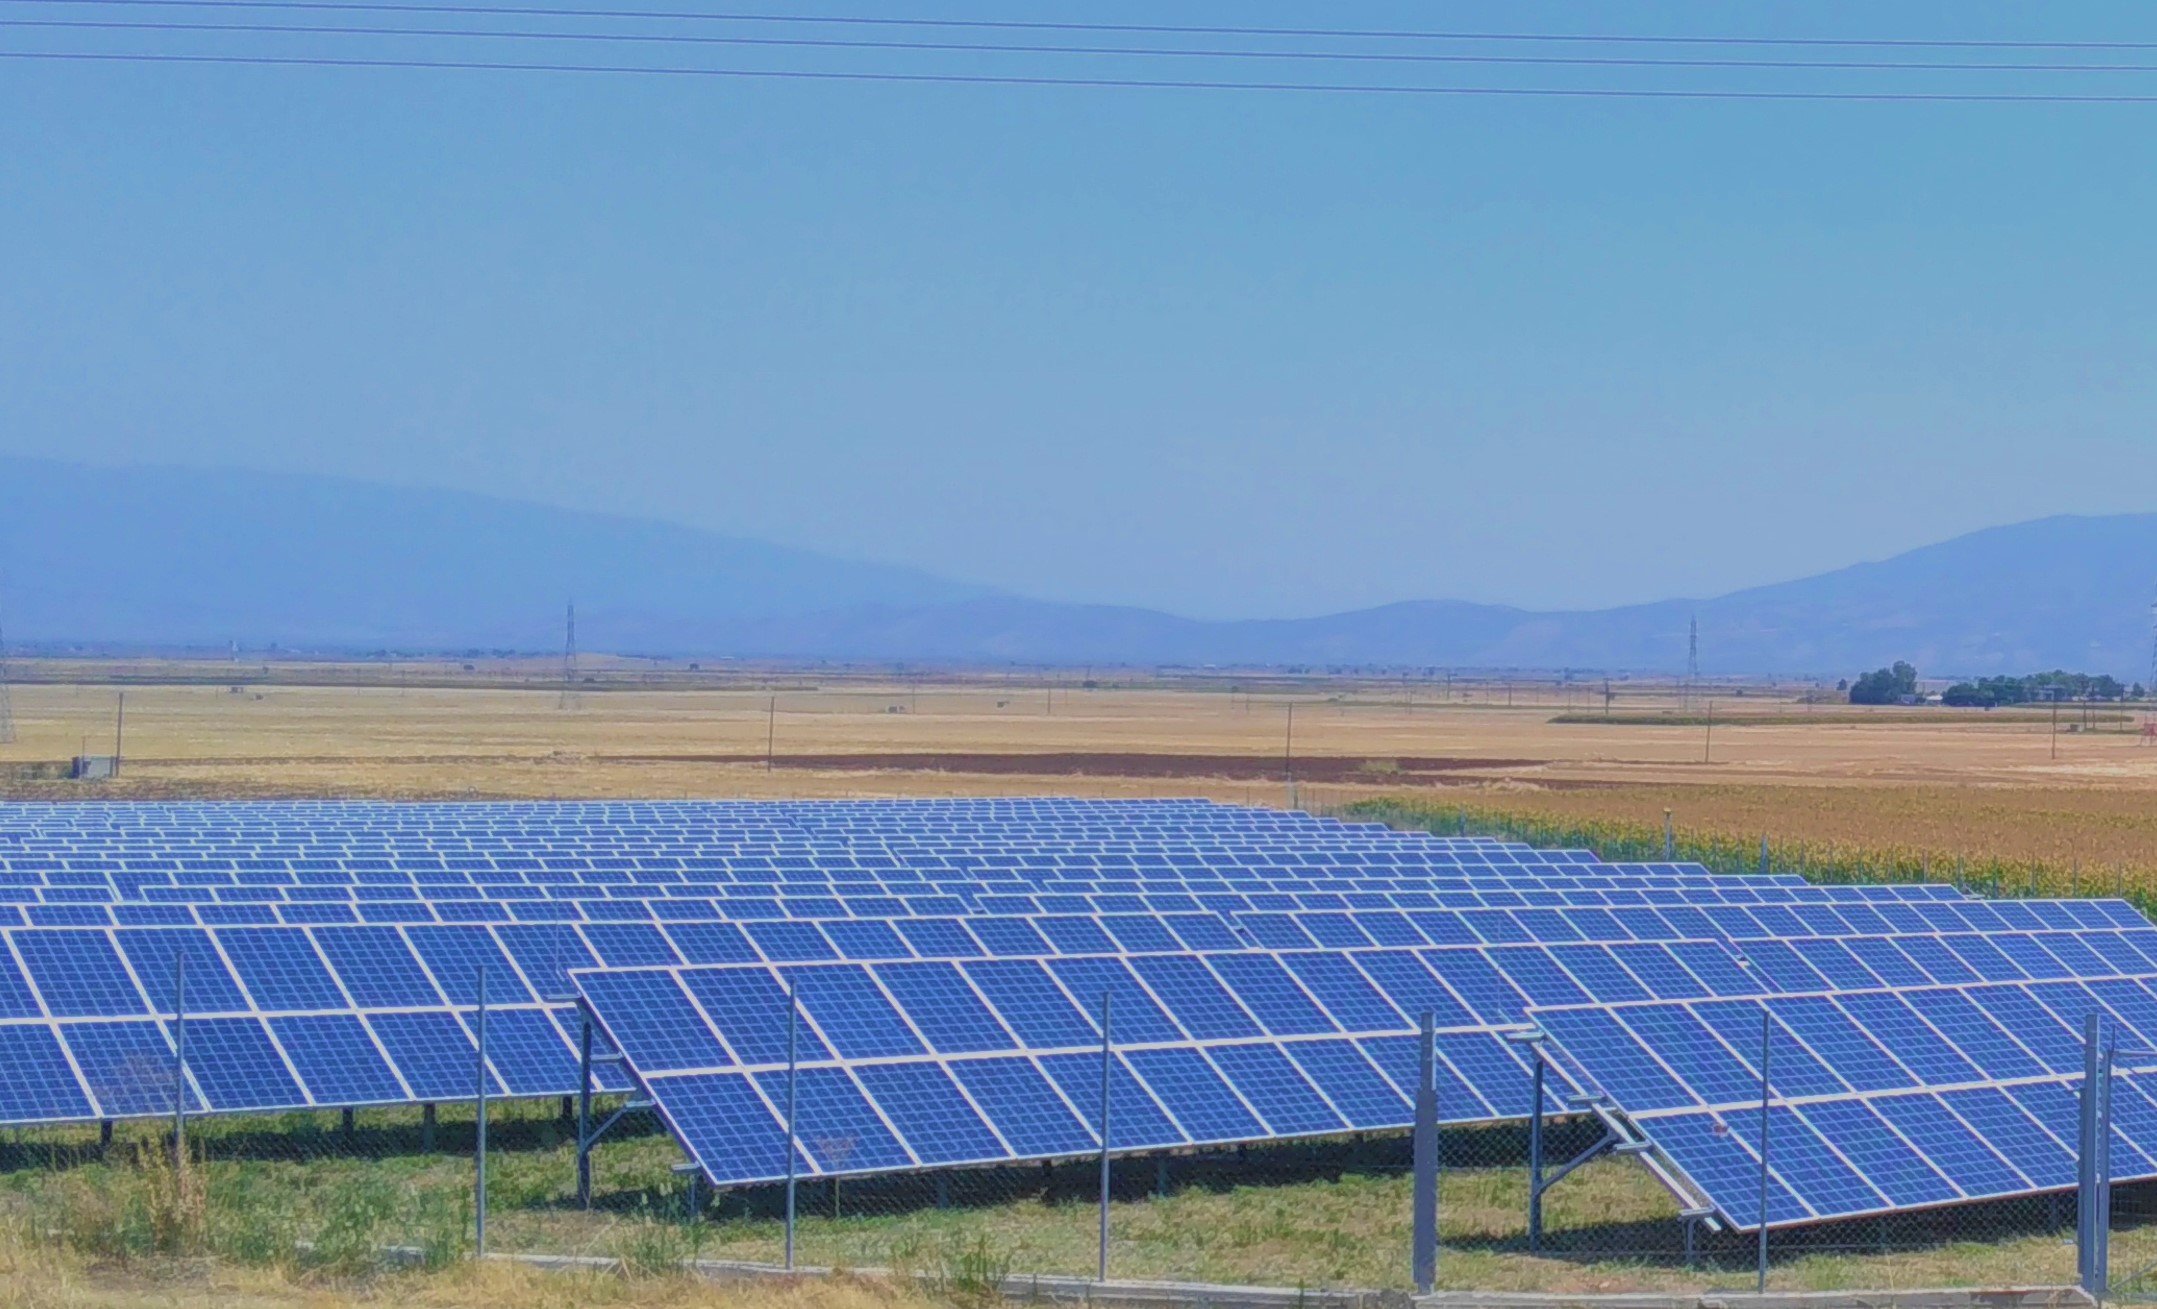 06.04.2021 – SolarKapital expandiert weiter in Griechenland 